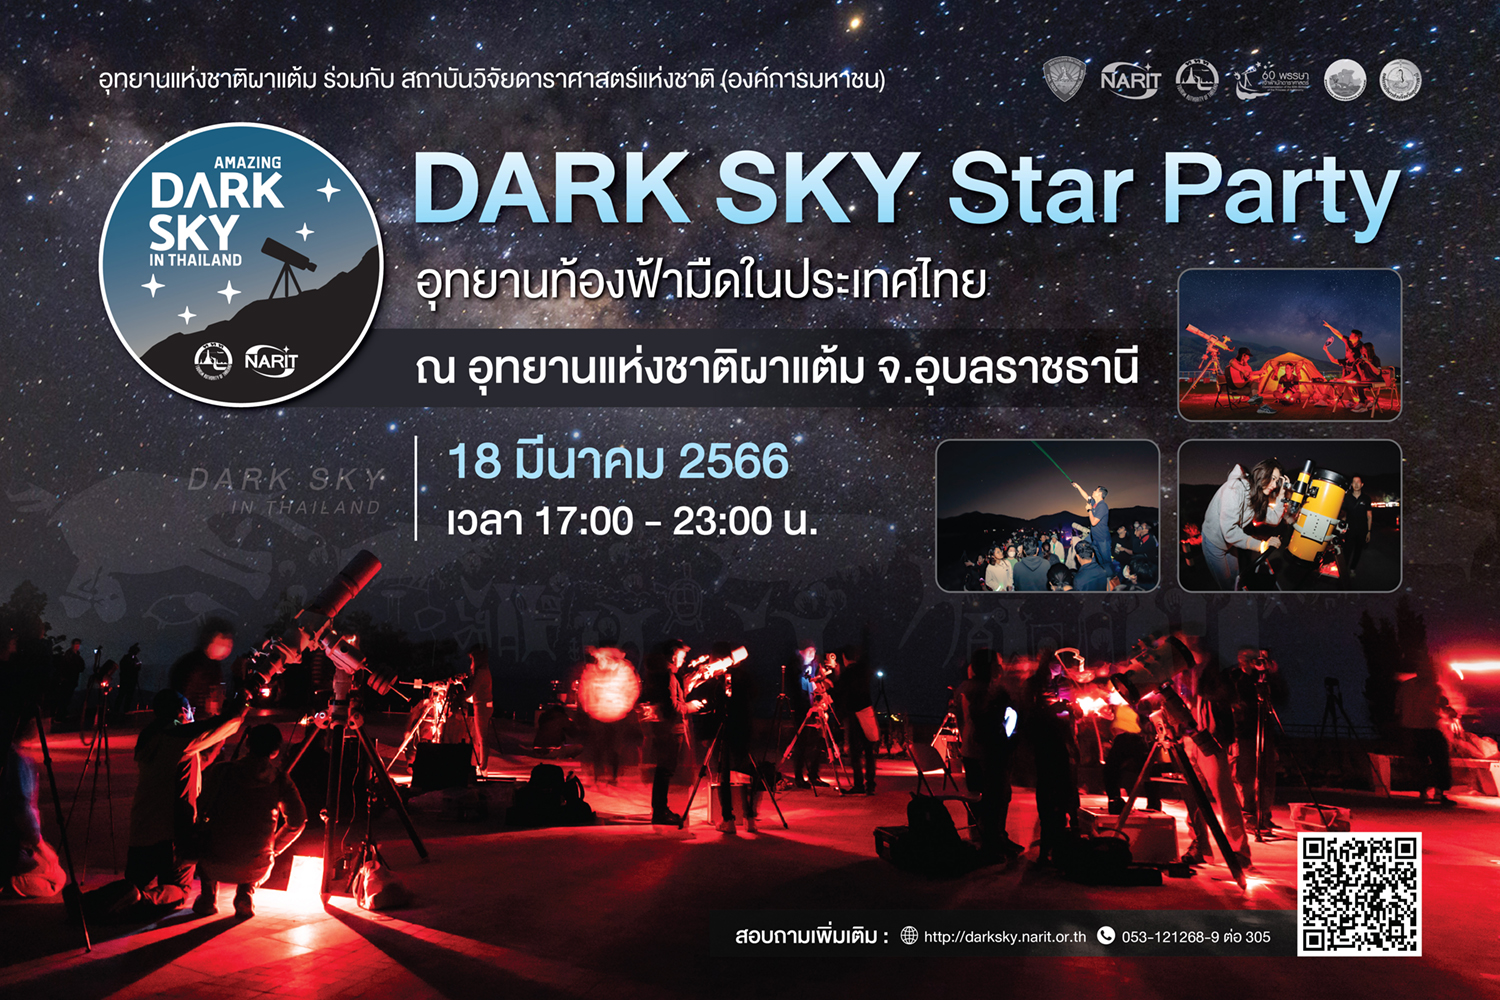 18 มีนาคมนี้ ชวนมาชมดาวกับ Dark Sky Star Party มหกรรมท่องเที่ยวดูดาวสุดยิ่งใหญ่ครั้งแรกของไทยที่ผาแต้ม